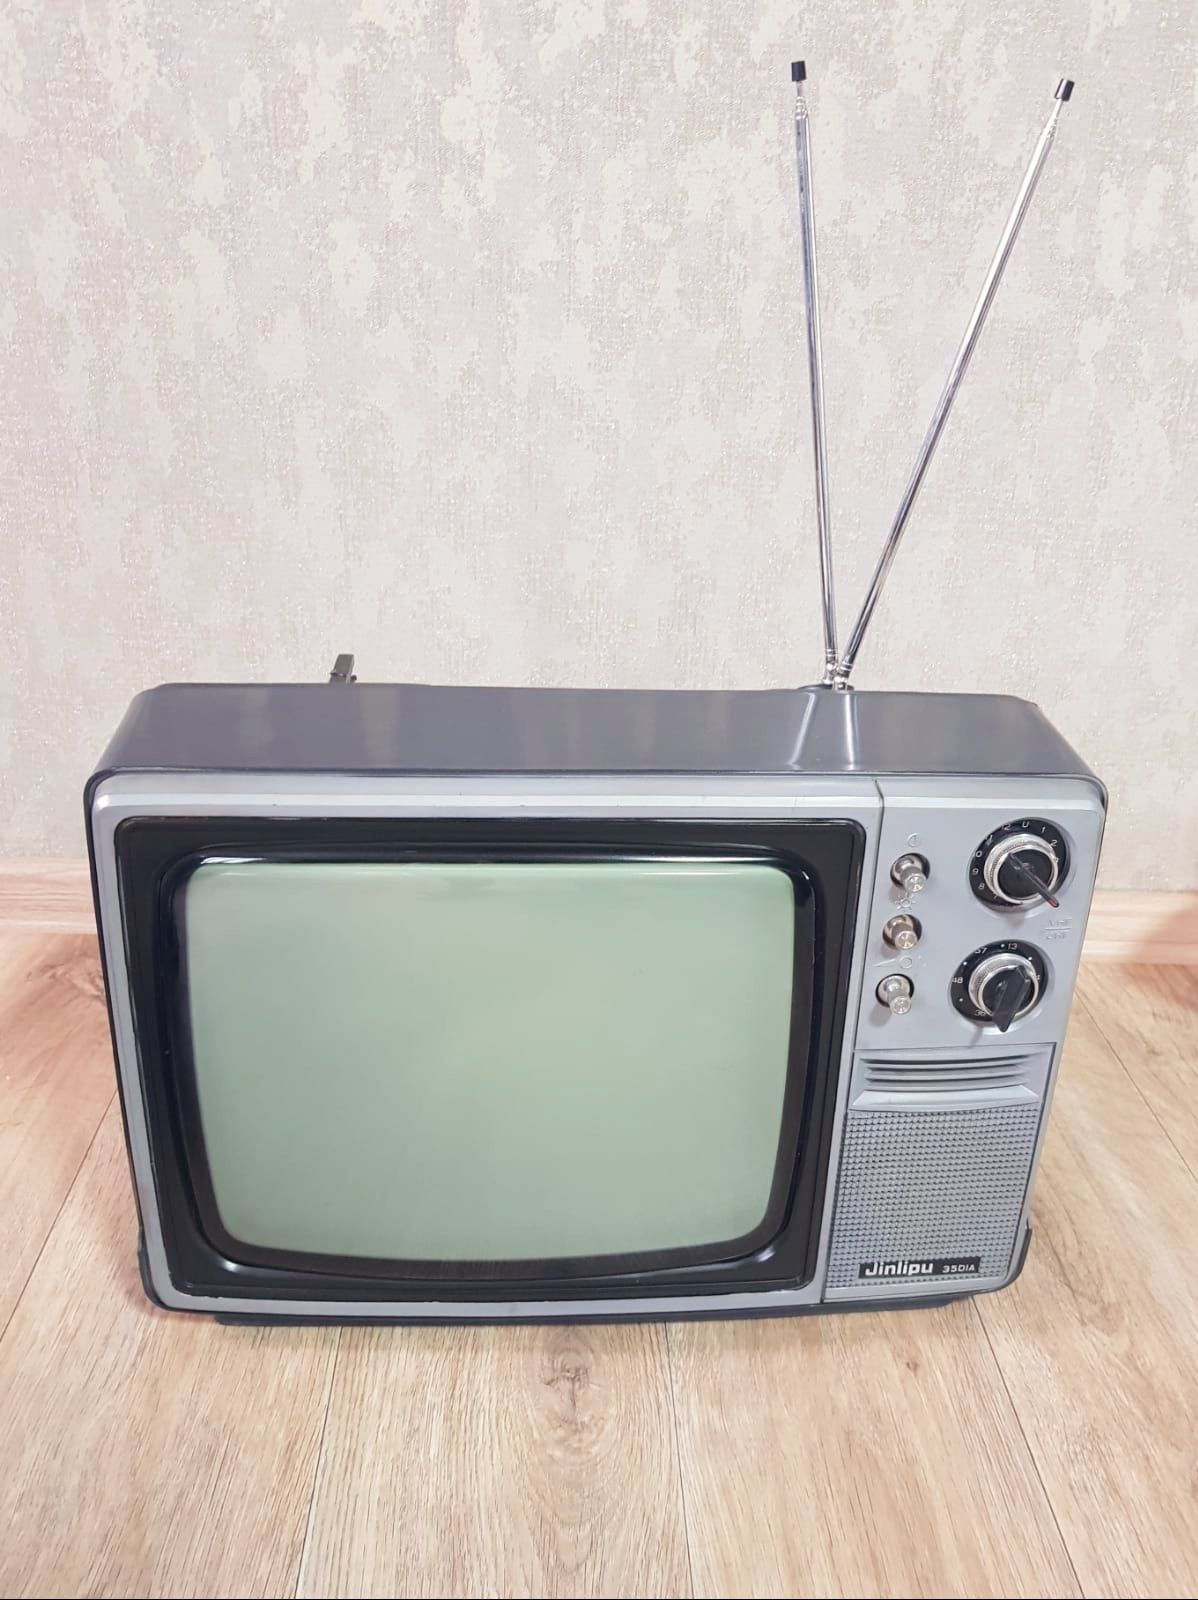 Продам переносной телевизор б/у